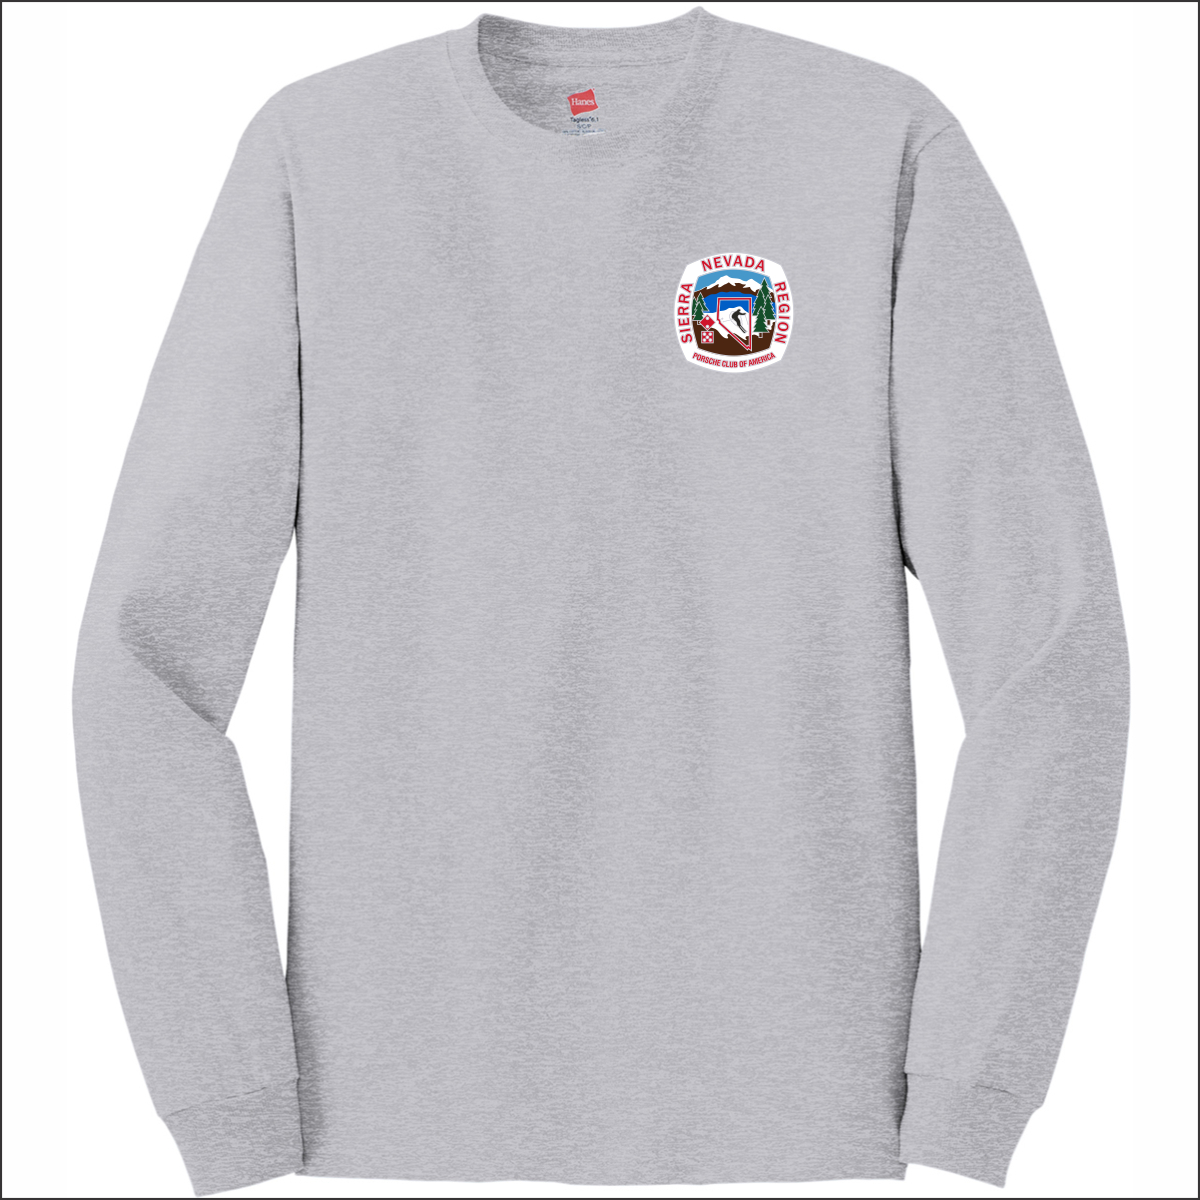 Hanes Men's Authentic 100% Cotton Long Sleeve T-Shirt